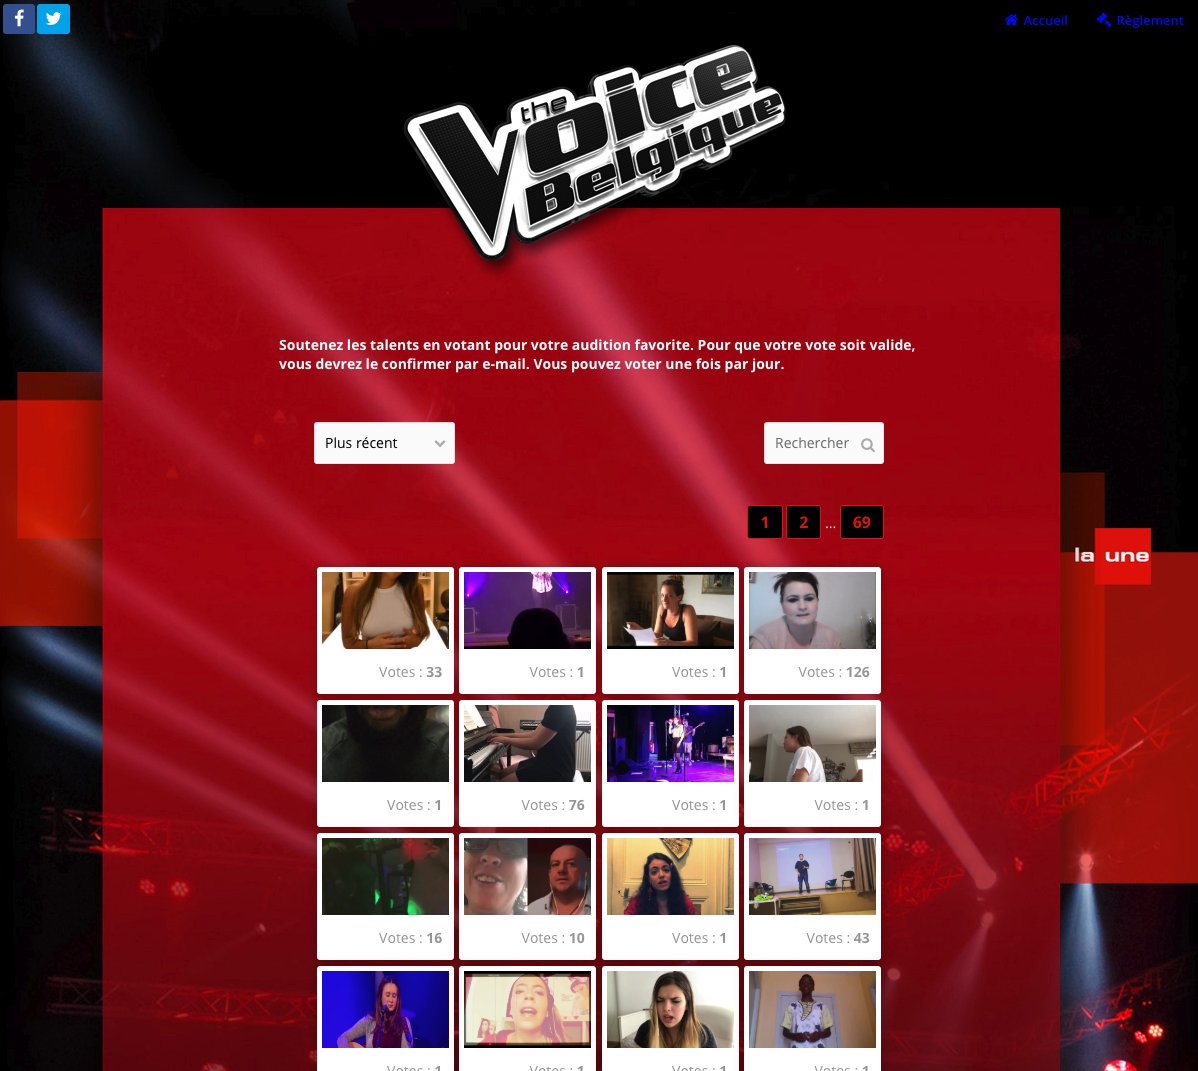 Les auditions de The Voice : un exemple de CGU